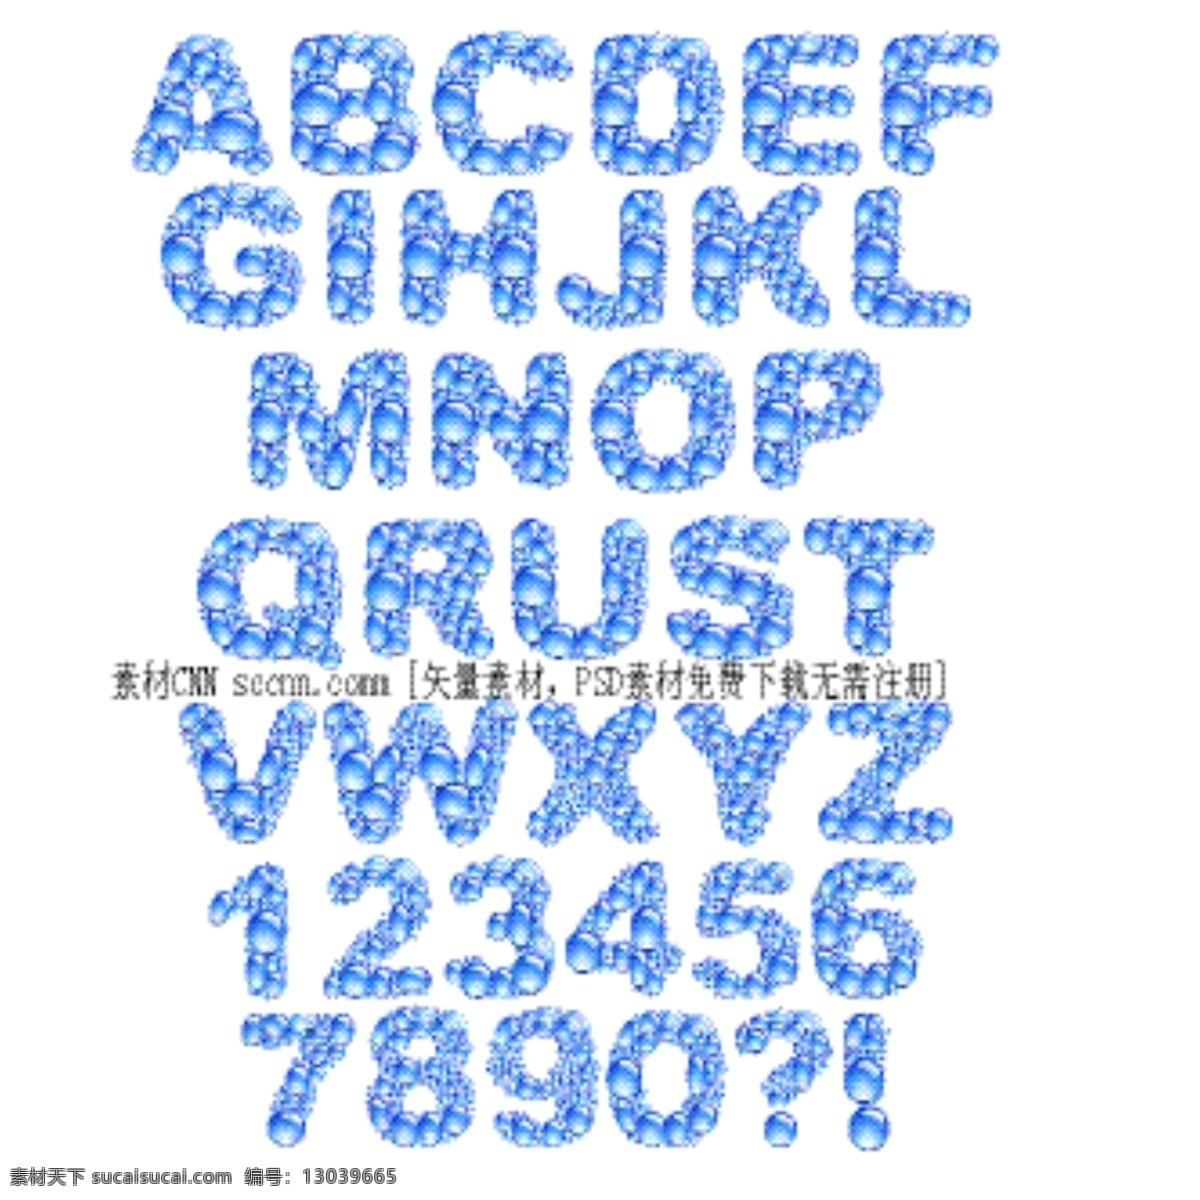 蓝色 水珠 字 字母 英文字母 阿拉伯数字 水滴 字体 蓝色水珠 组合字体 白色